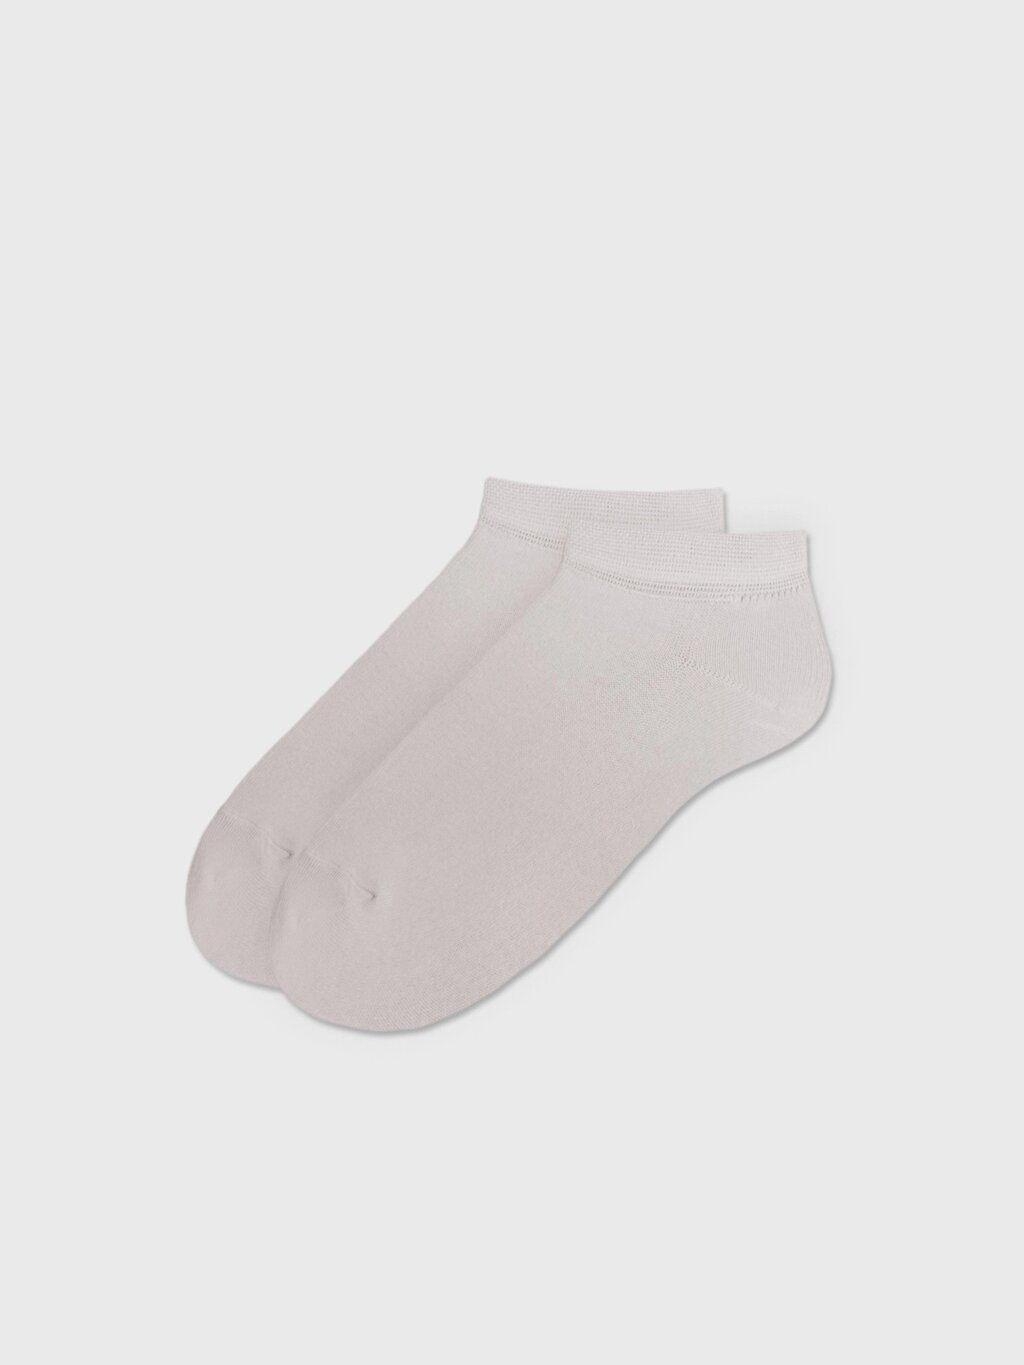 Носки укороченные серые (41-43) от компании Admi - фото 1